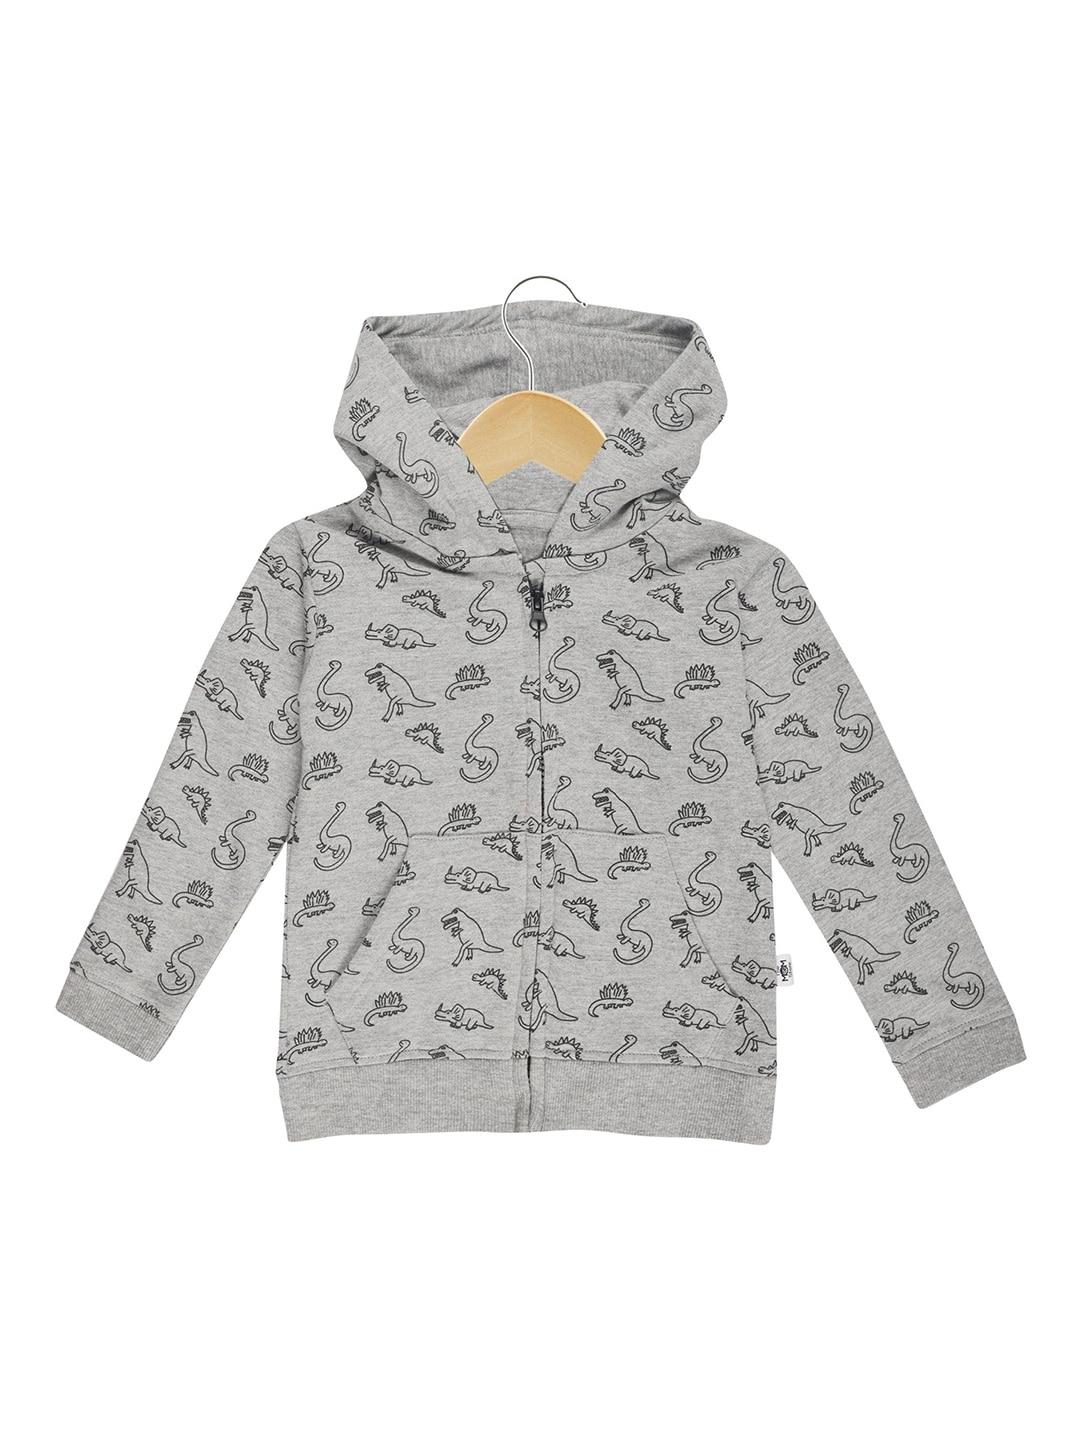 the mom store unisex kids grey printed hooded sweatshirt